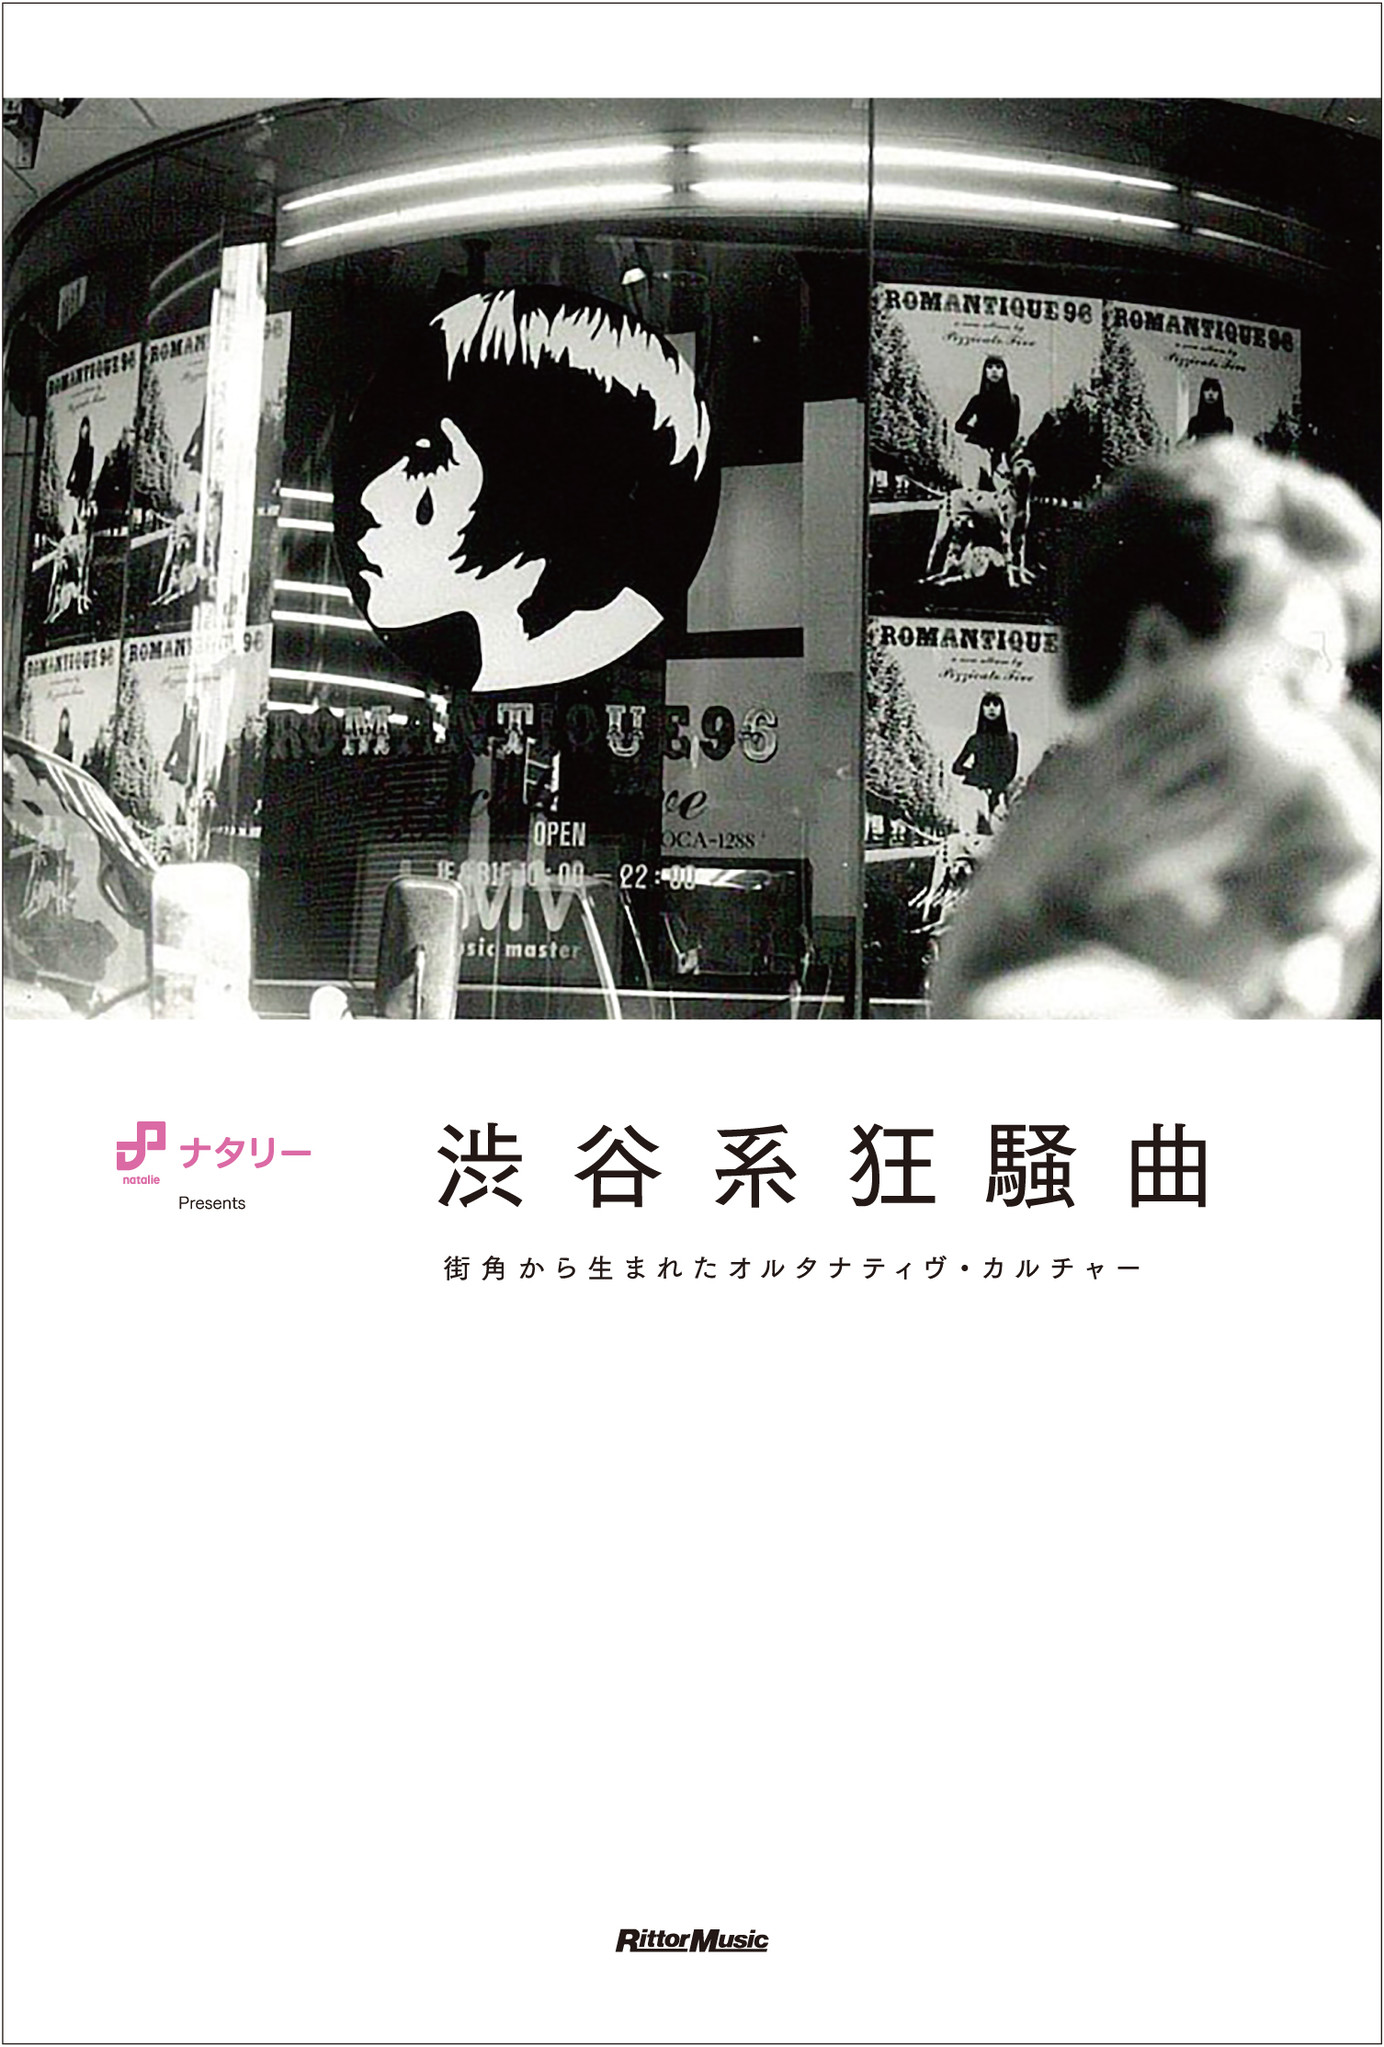 音楽ナタリーの人気連載 渋谷系を掘り下げる が書籍化決定 渋谷系狂騒曲 として来年2月に発売 株式会社インプレスホールディングスのプレスリリース